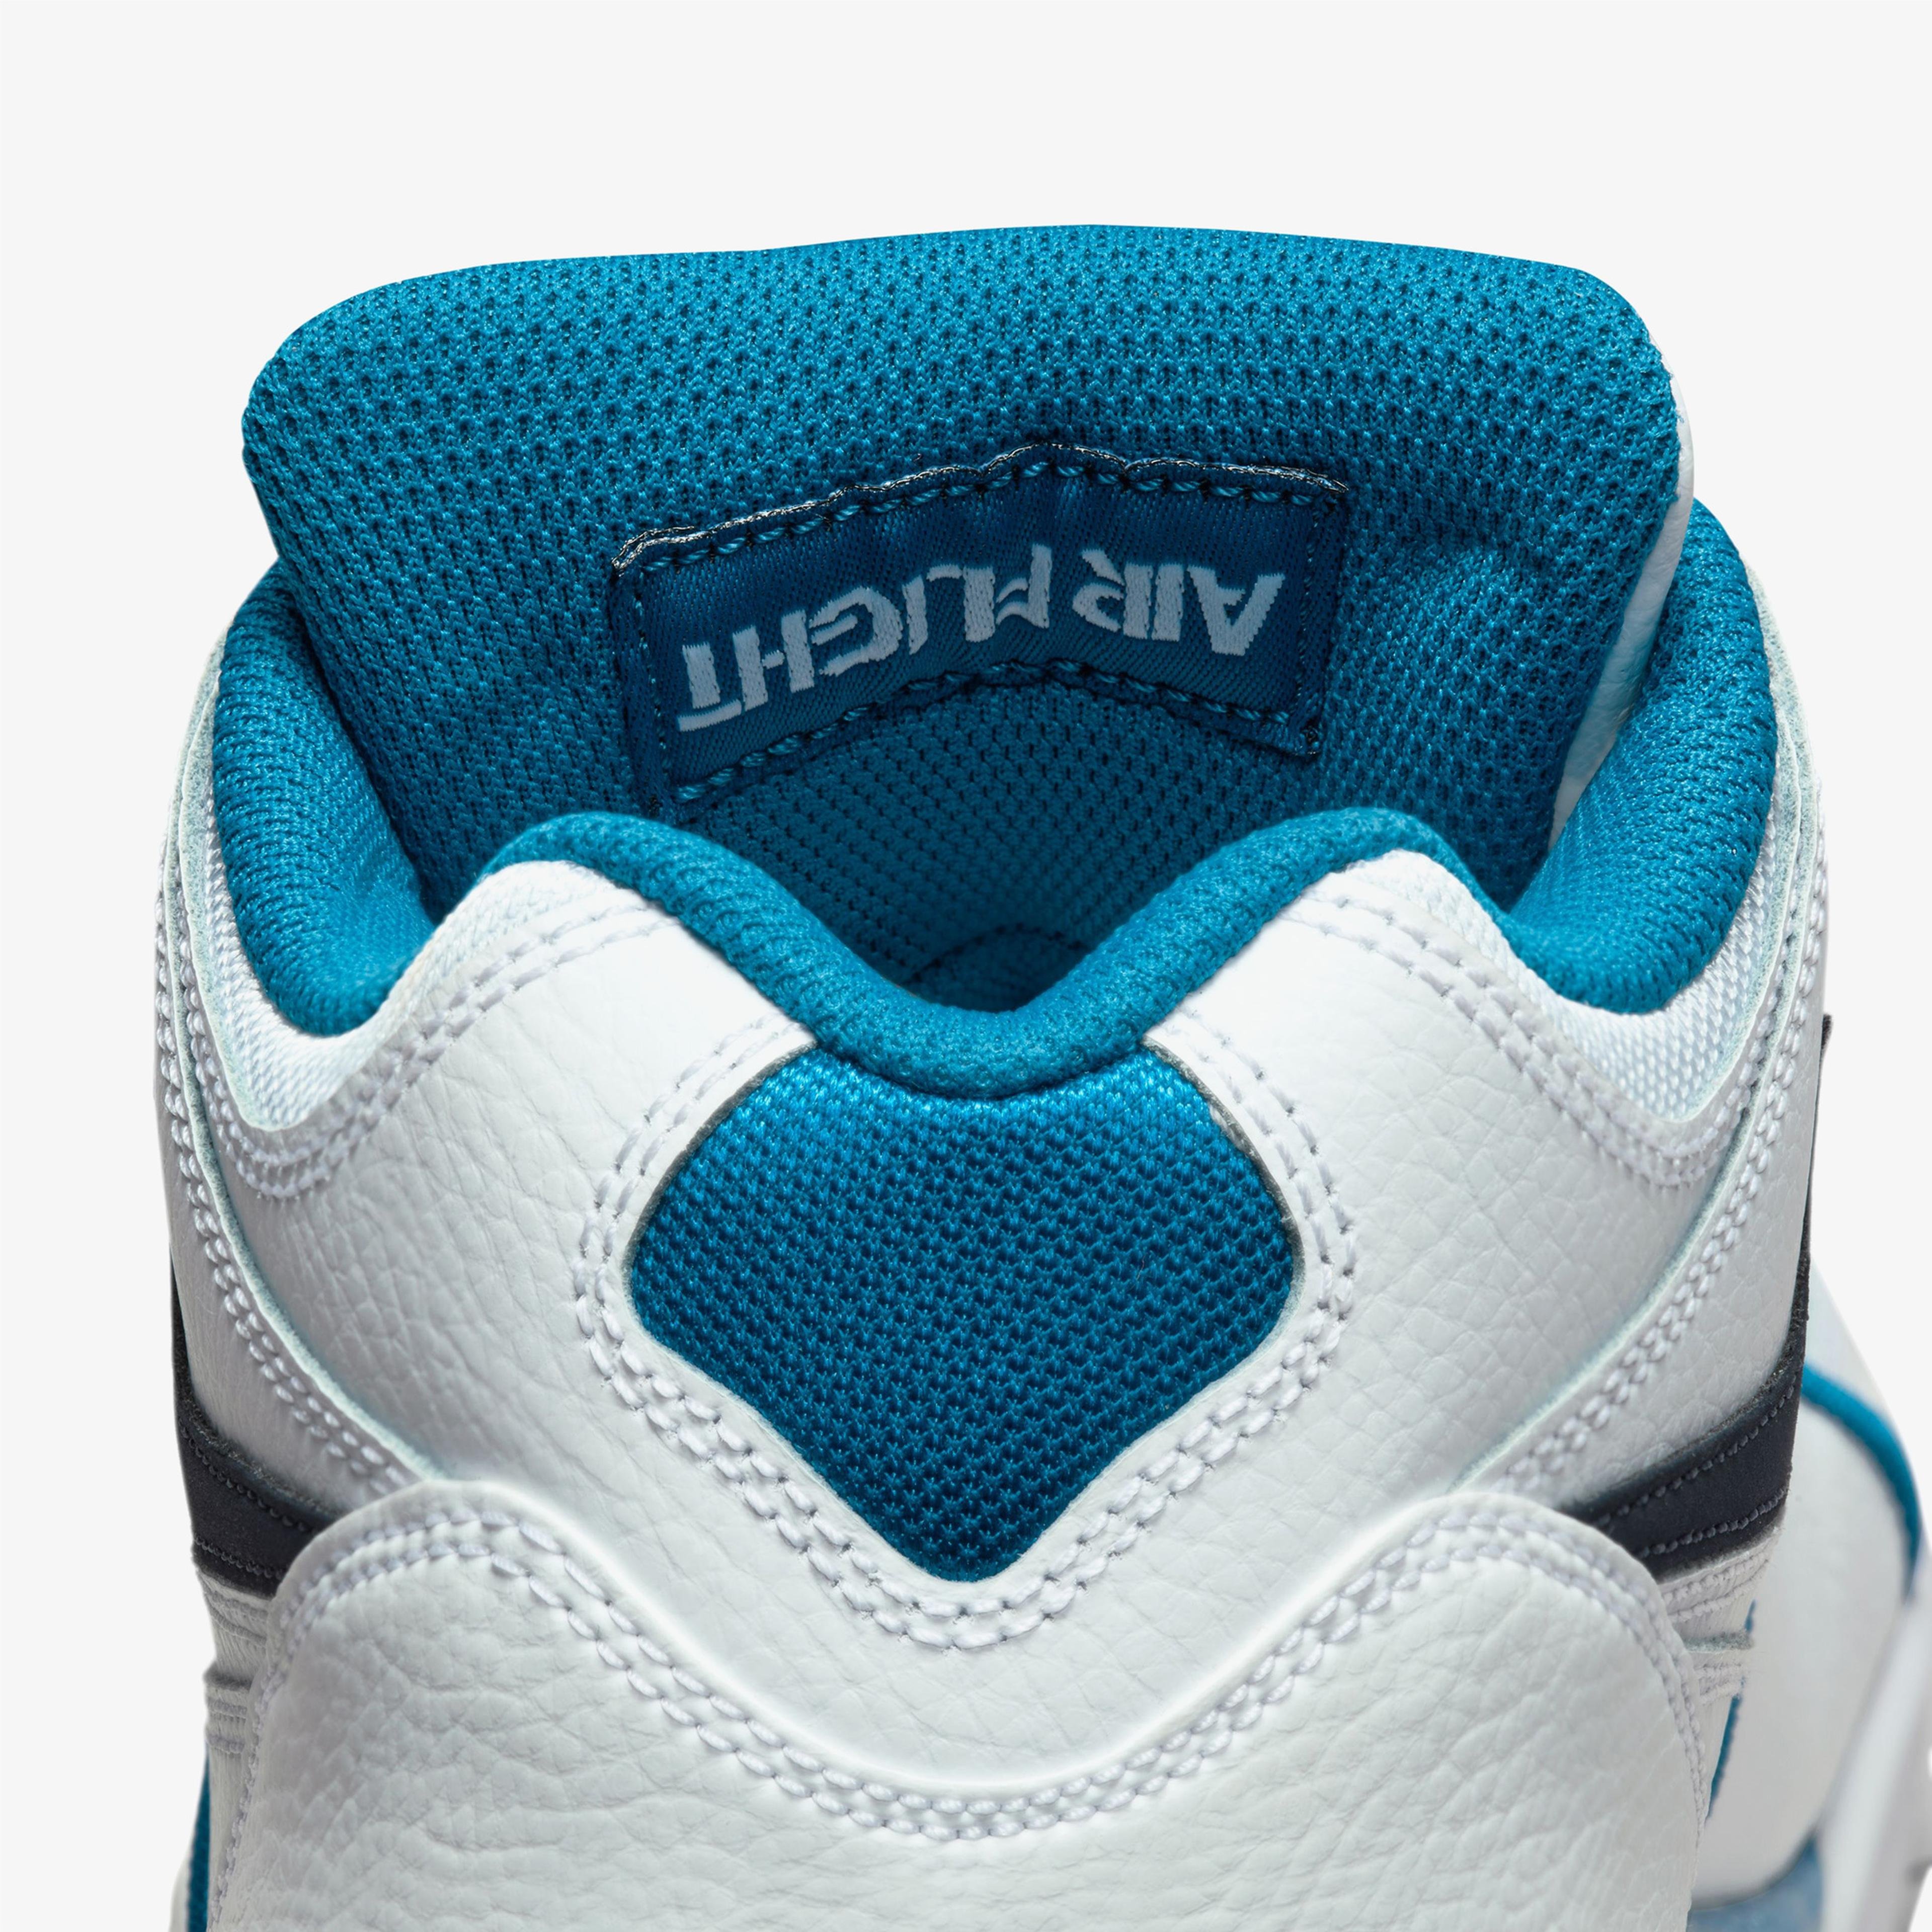 Nike Air Flight 89 Erkek Beyaz/Mavi Spor Ayakkabı